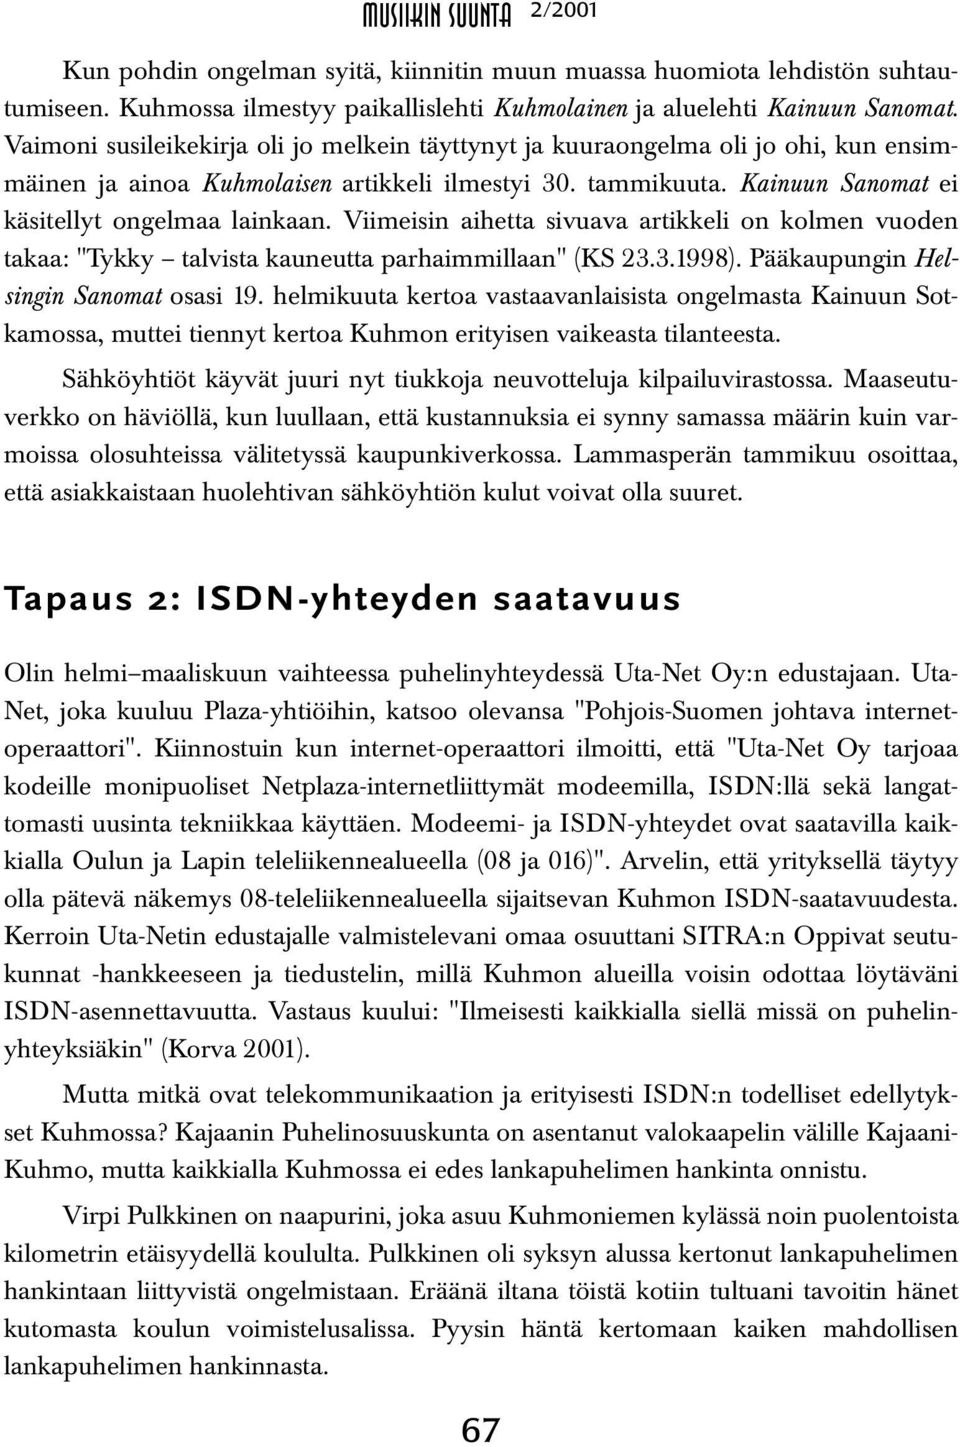 Viimeisin aihetta sivuava artikkeli on kolmen vuoden takaa: "Tykky talvista kauneutta parhaimmillaan" (KS 23.3.1998). Pääkaupungin Helsingin Sanomat osasi 19.